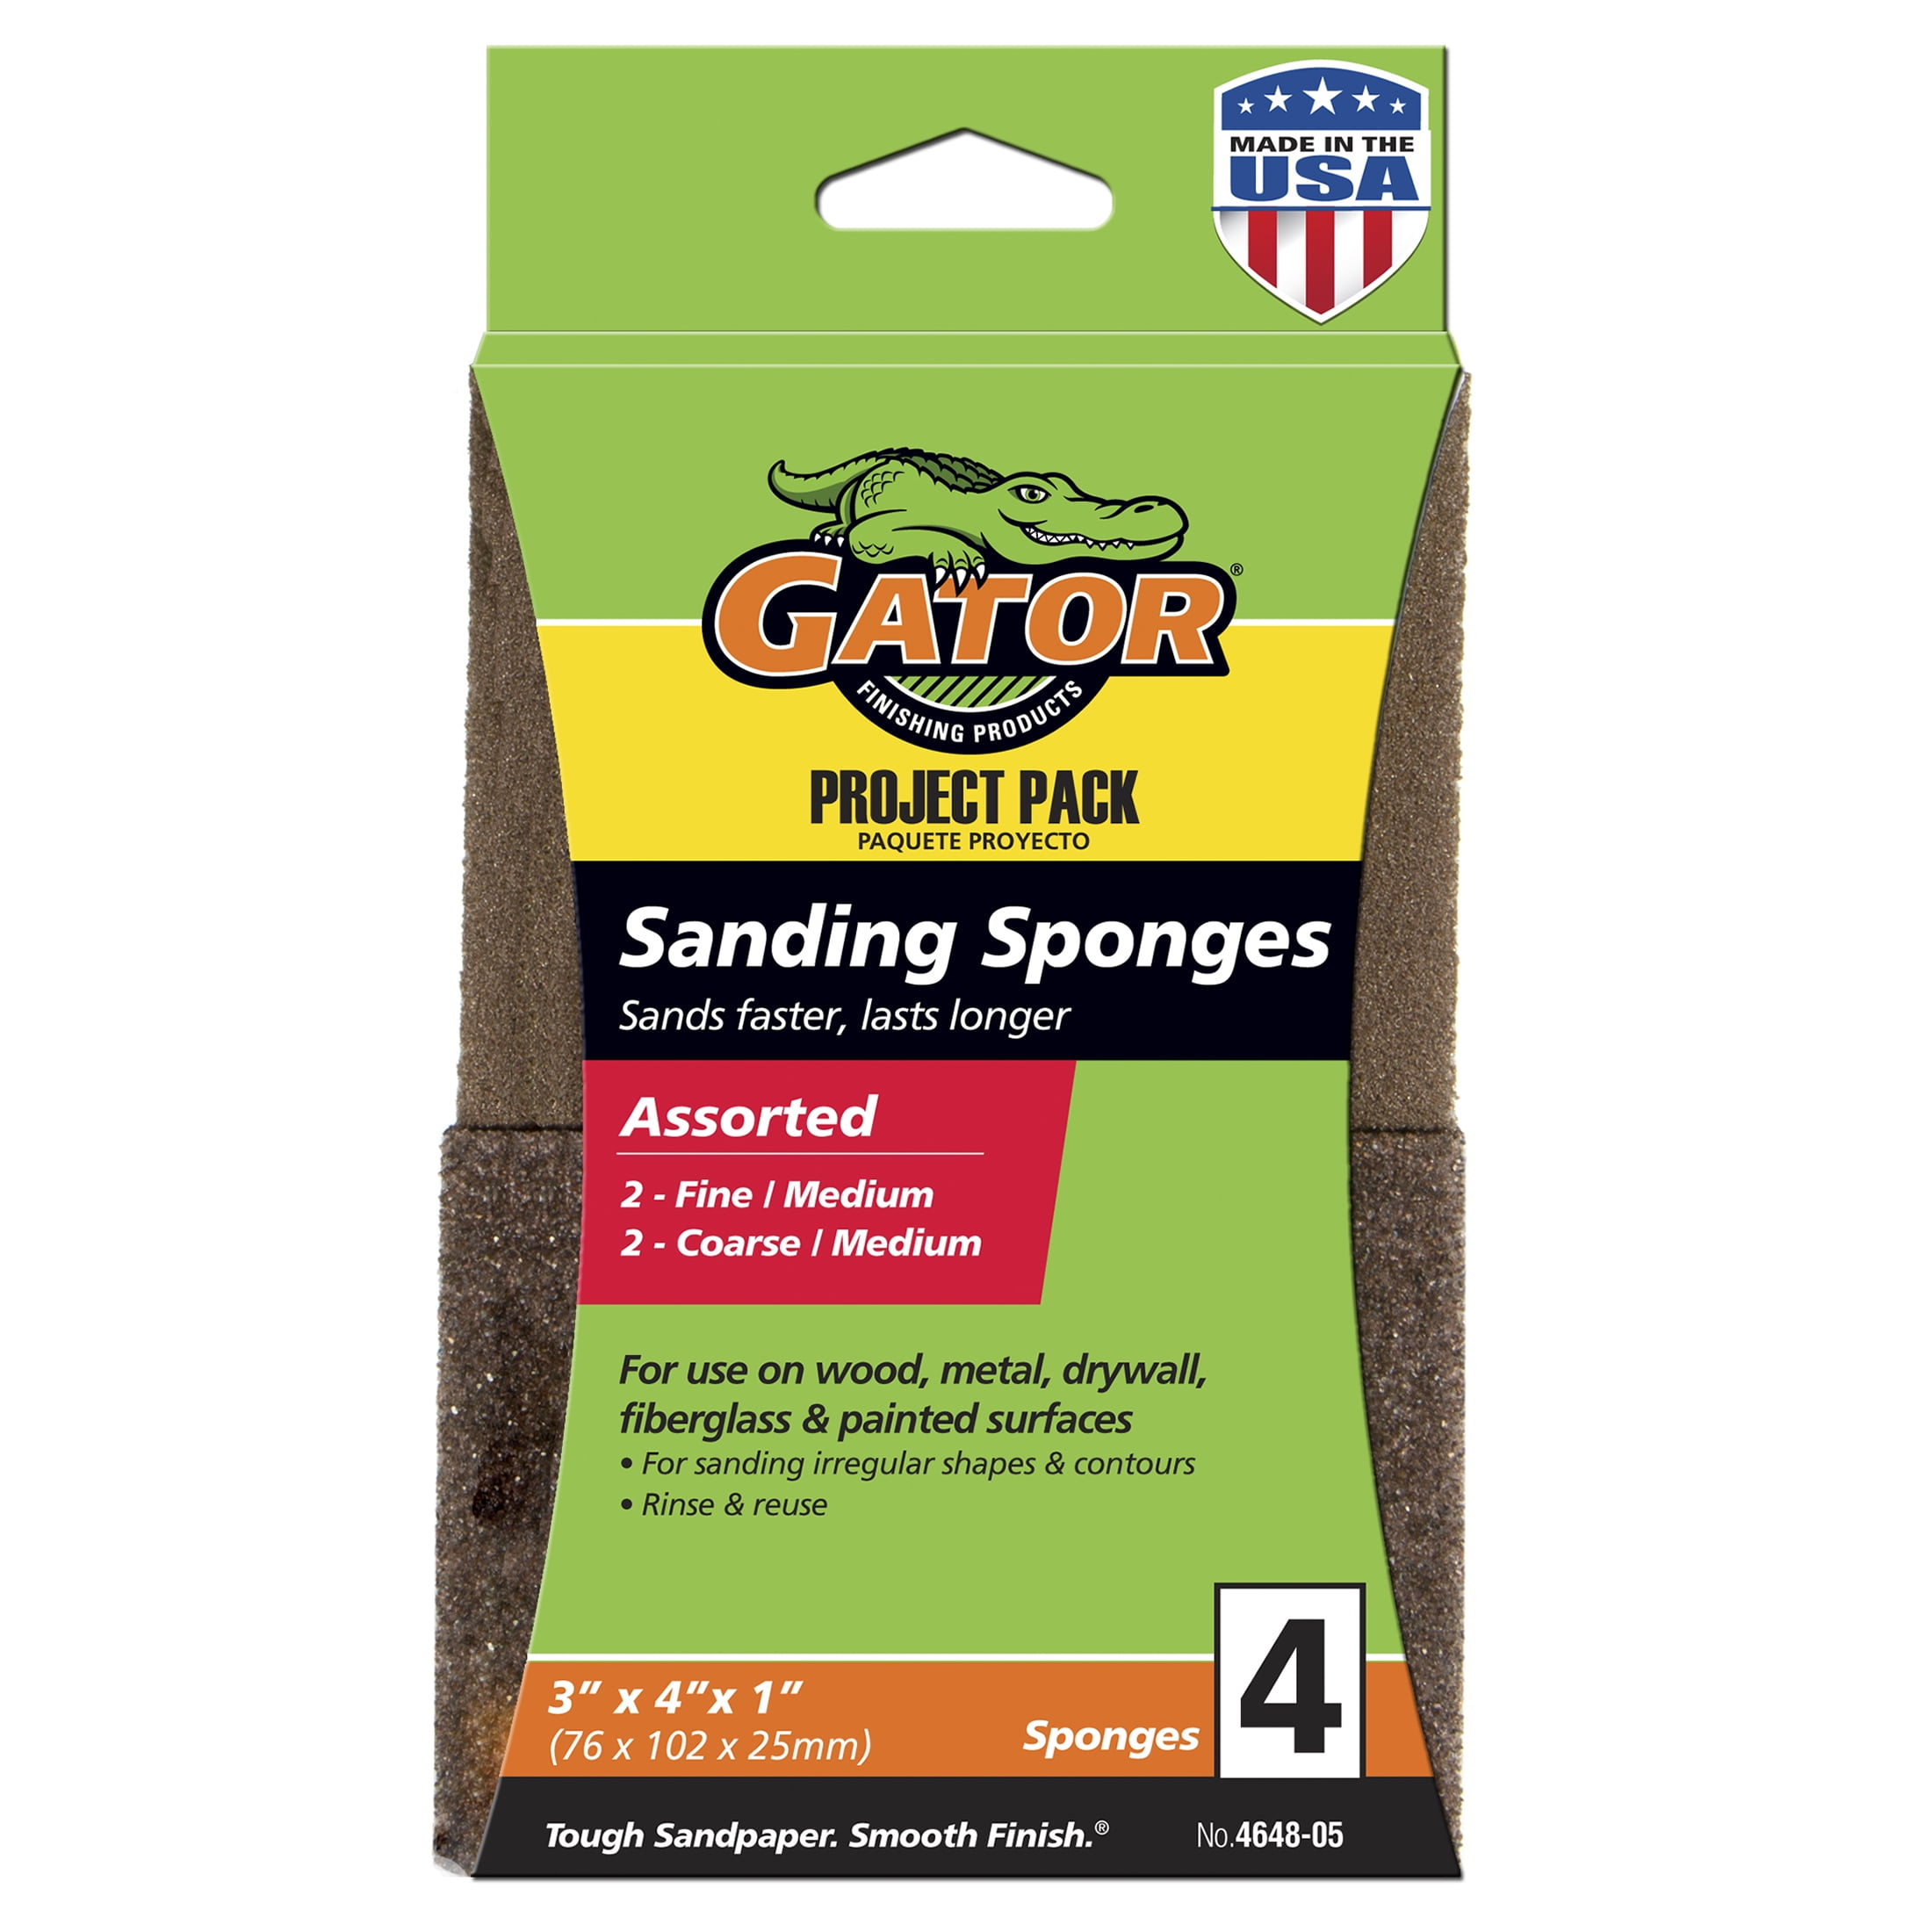 Gator Assorted Multi-Surface Sanding Sponge, 4 Pack